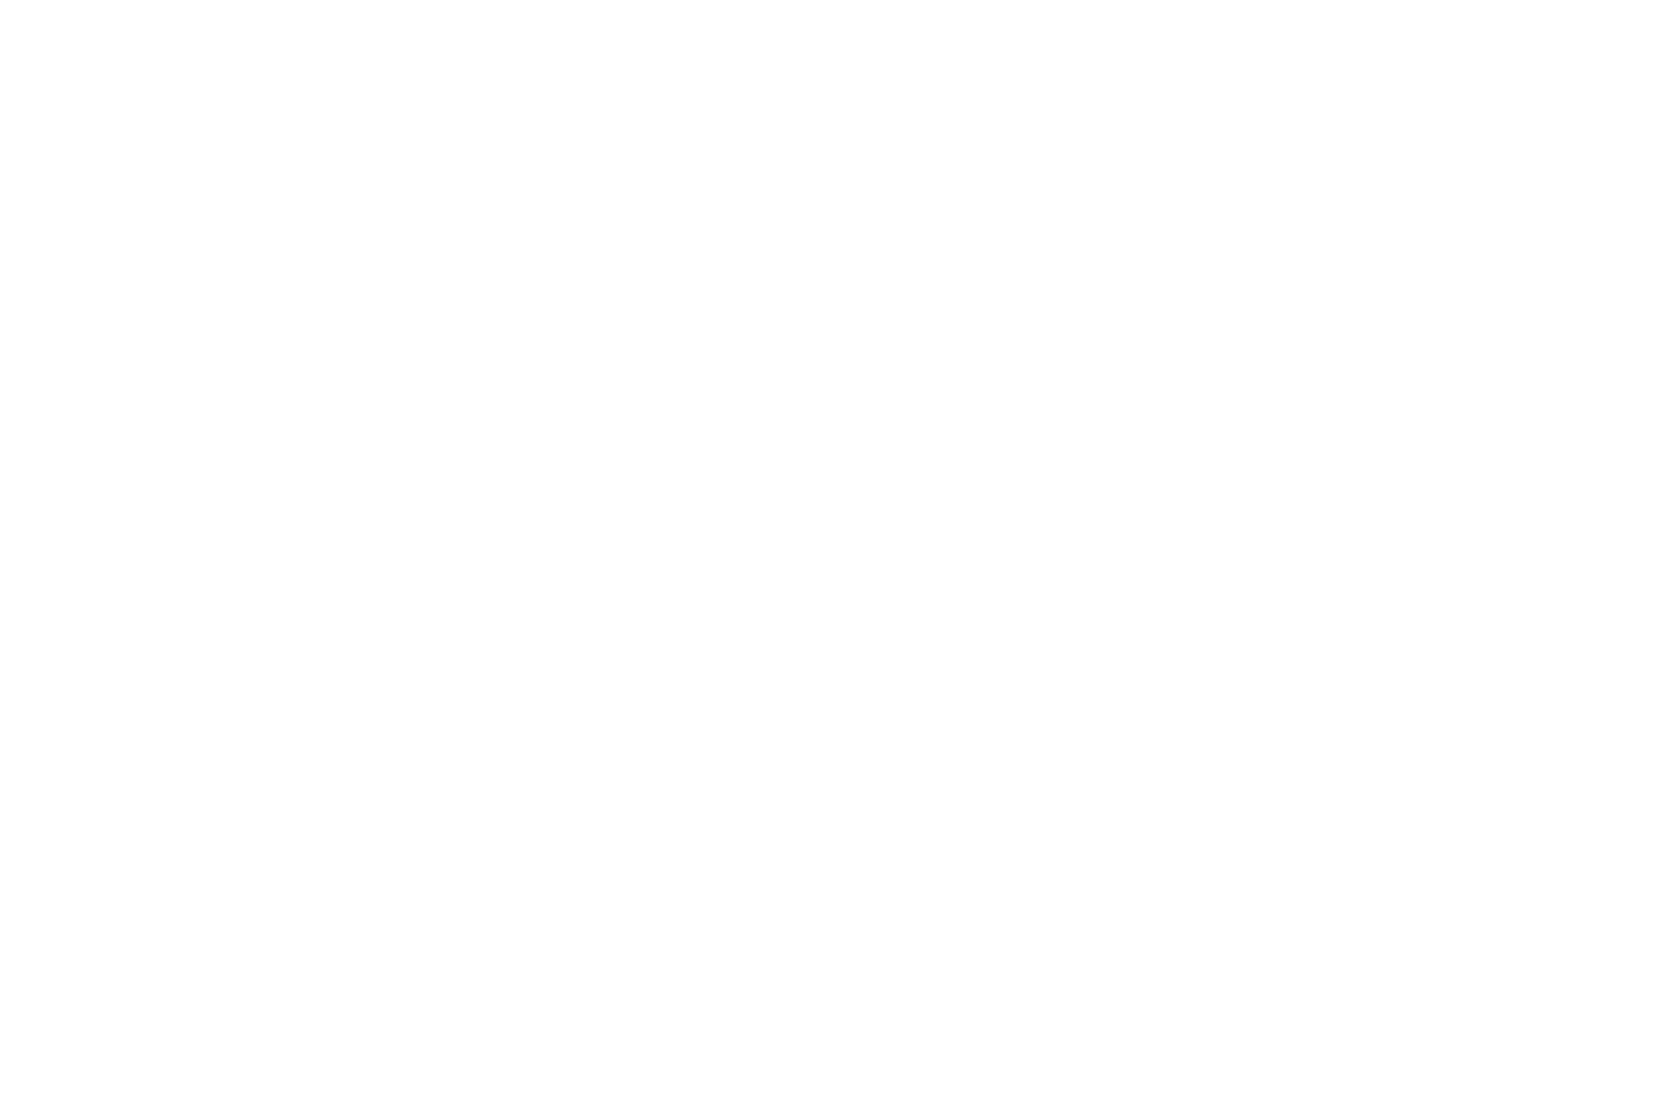 Ажурные, необычайно мягкие трусики черного цвета из роскошного козьего пуха выполнены уникальным методом вязания, применяемым в искусстве ручного прядения.